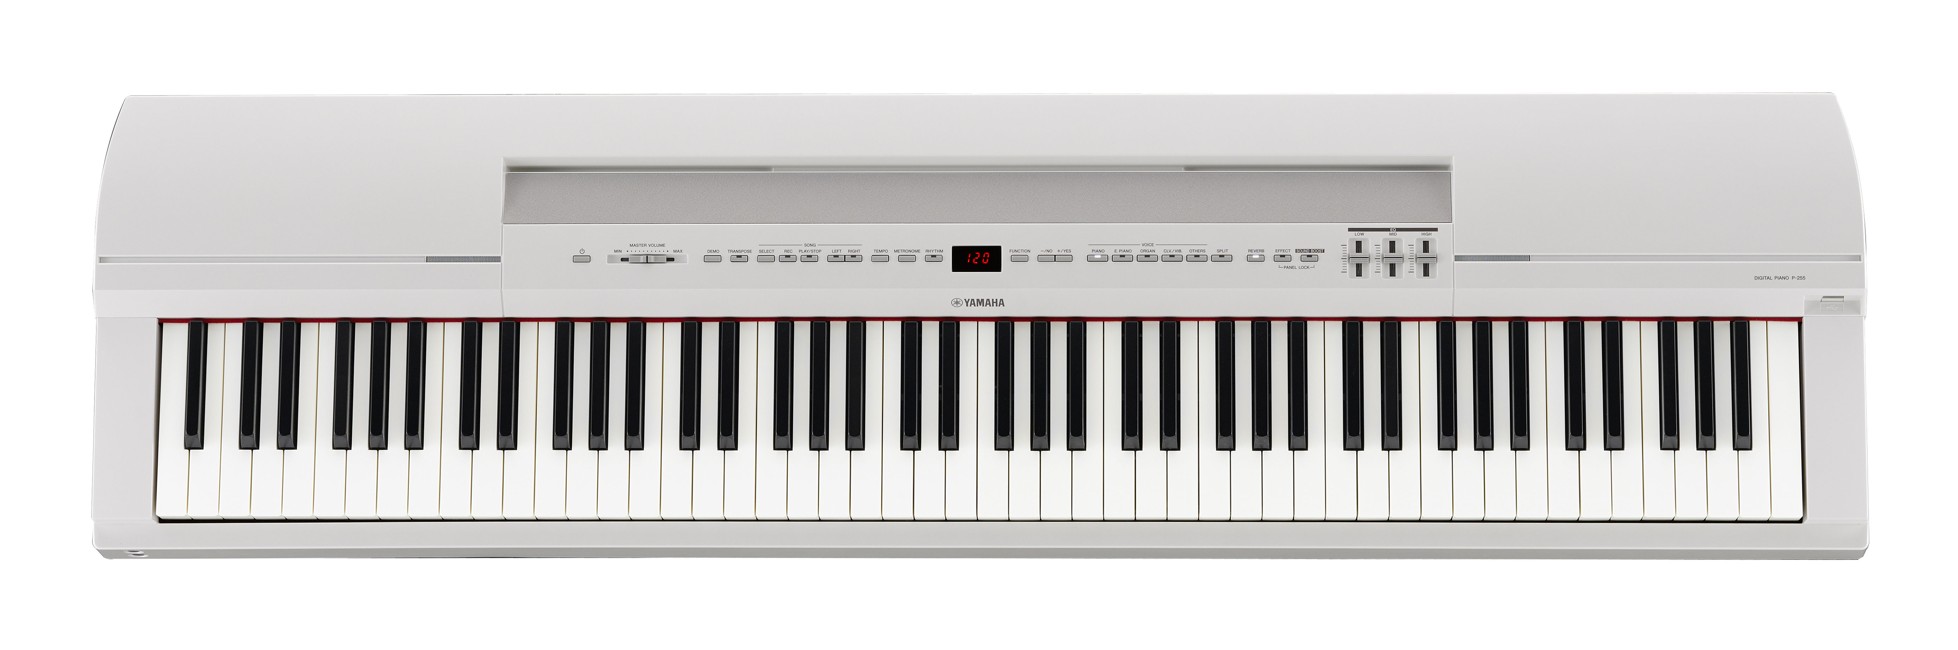 Yamaha - P-255 - Stage Piano (White)